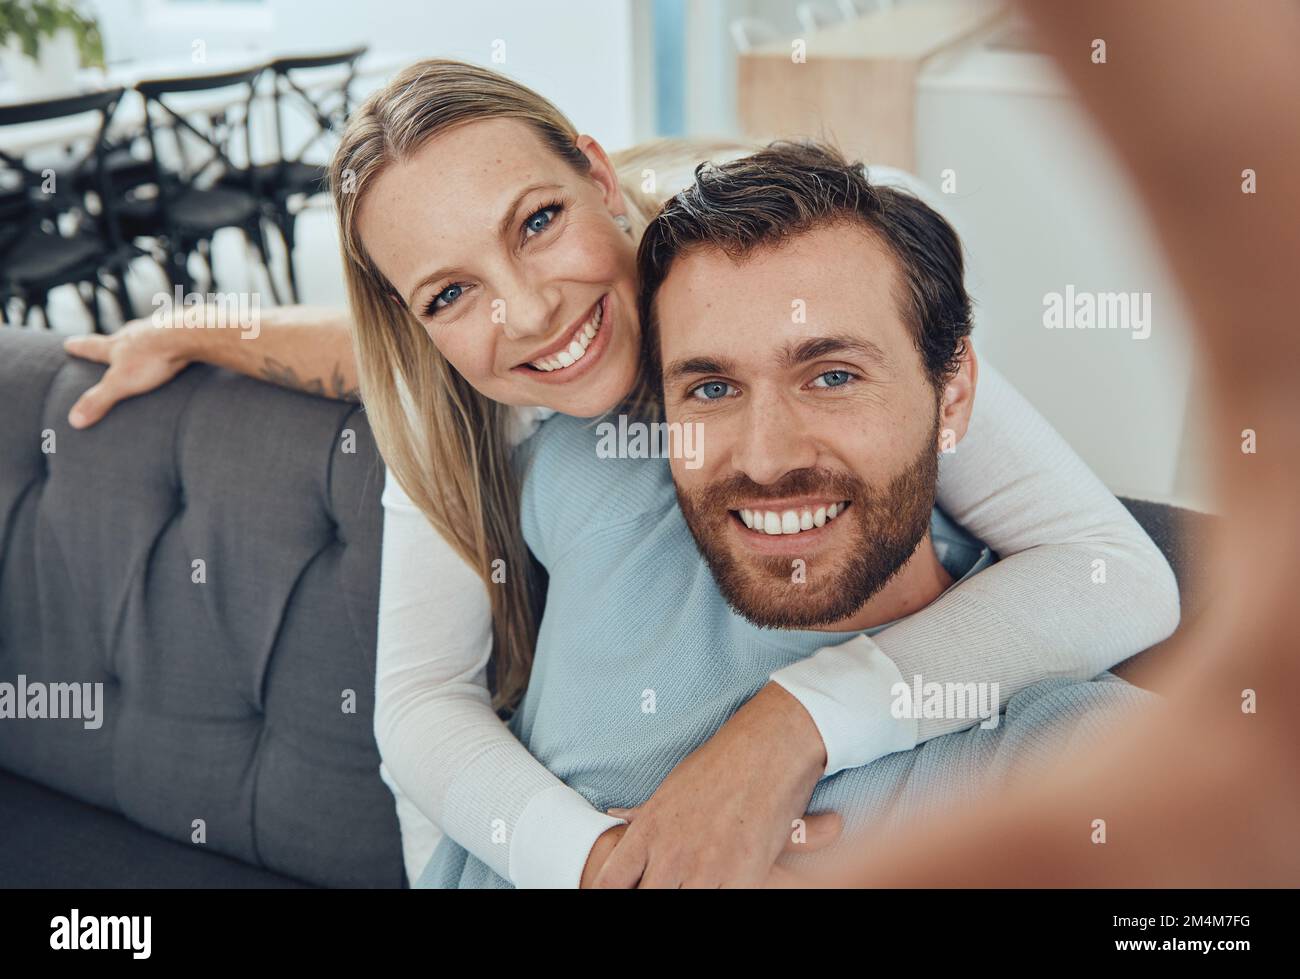 Liebe, Selfie und Paar auf dem Sofa, Lächeln und Verbundenheit für Beziehung, Wochenendausflug und Romantik. Porträt, Mann und Frau lieben, romantisch und umarmen Stockfoto